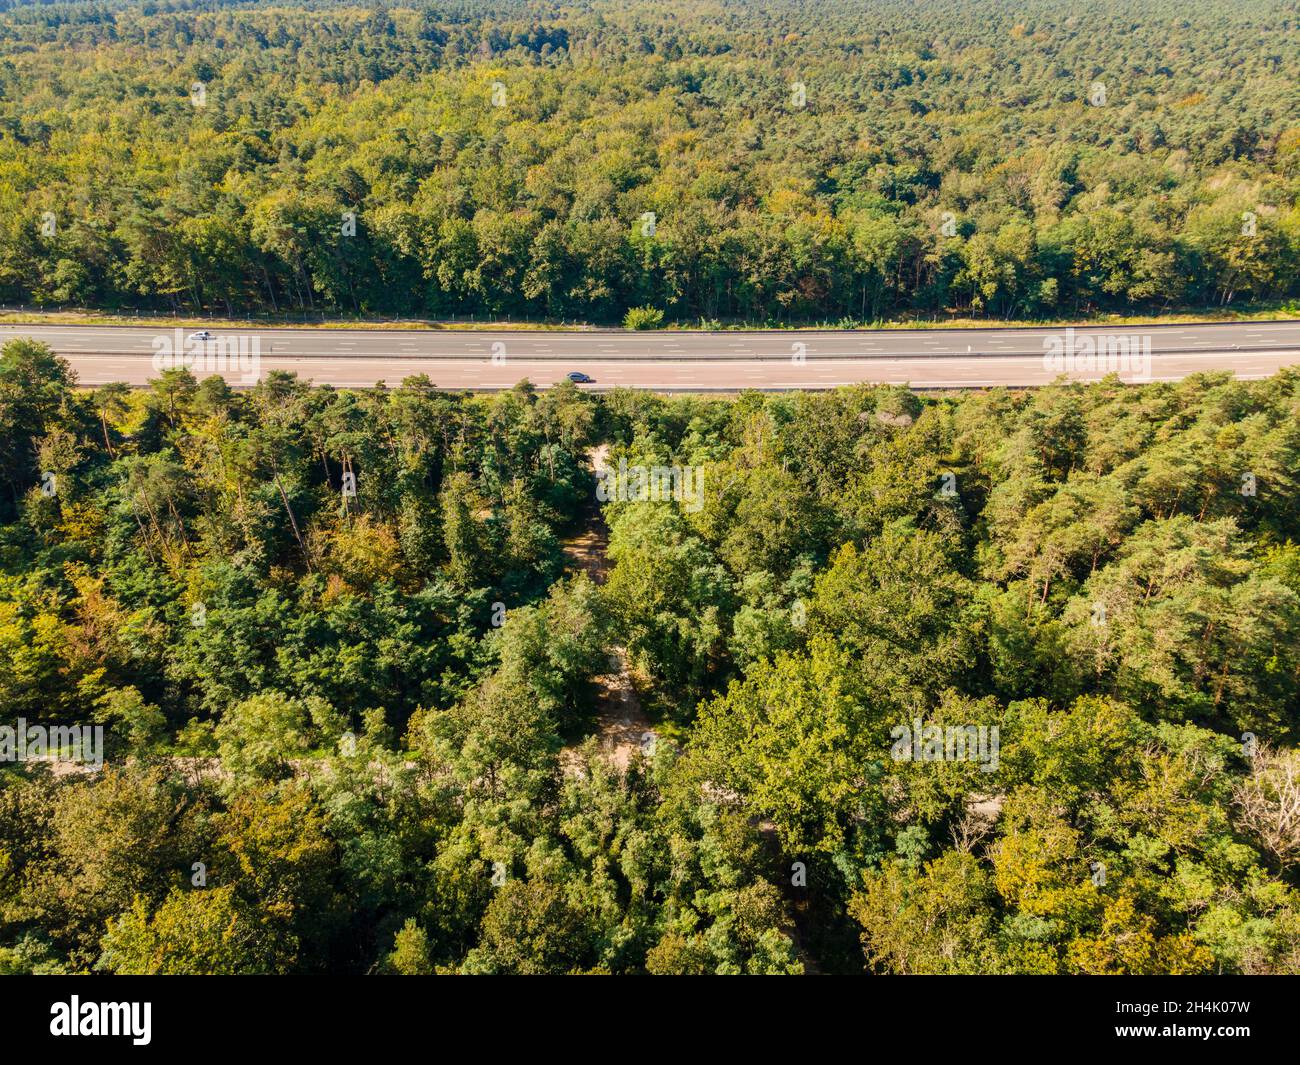 Frankreich, seine et Marne, Grez sur Loing, Fontainebleau-Wald, UNESCO-Welterbe Fontainebleau und Gatinais, Autobahn Autoroute du Soleil (A6 E15) (Luftaufnahme) Stockfoto